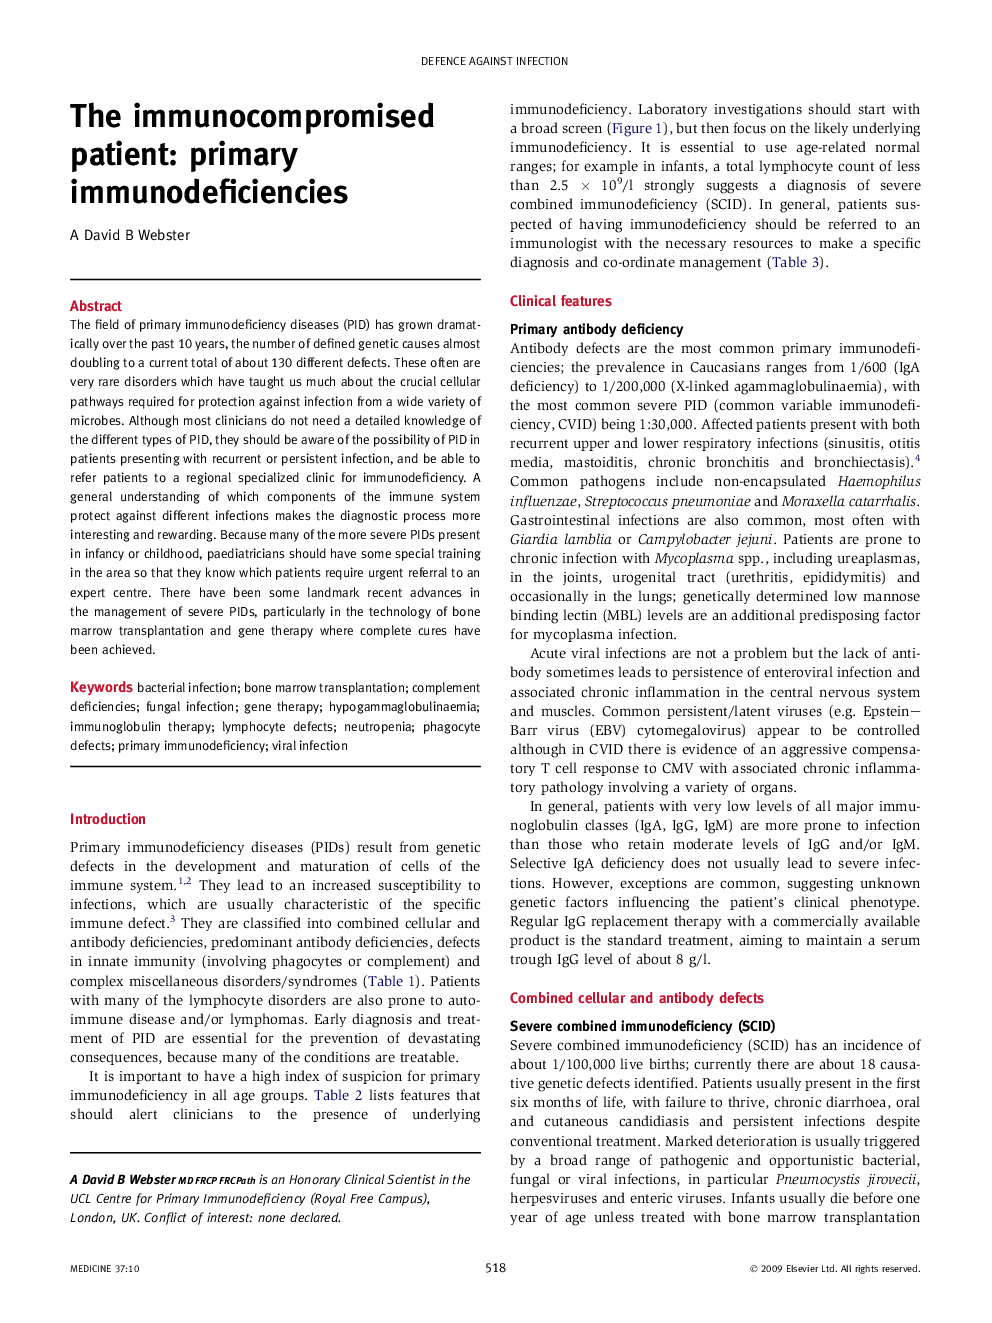 The immunocompromised patient: primary immunodeficiencies